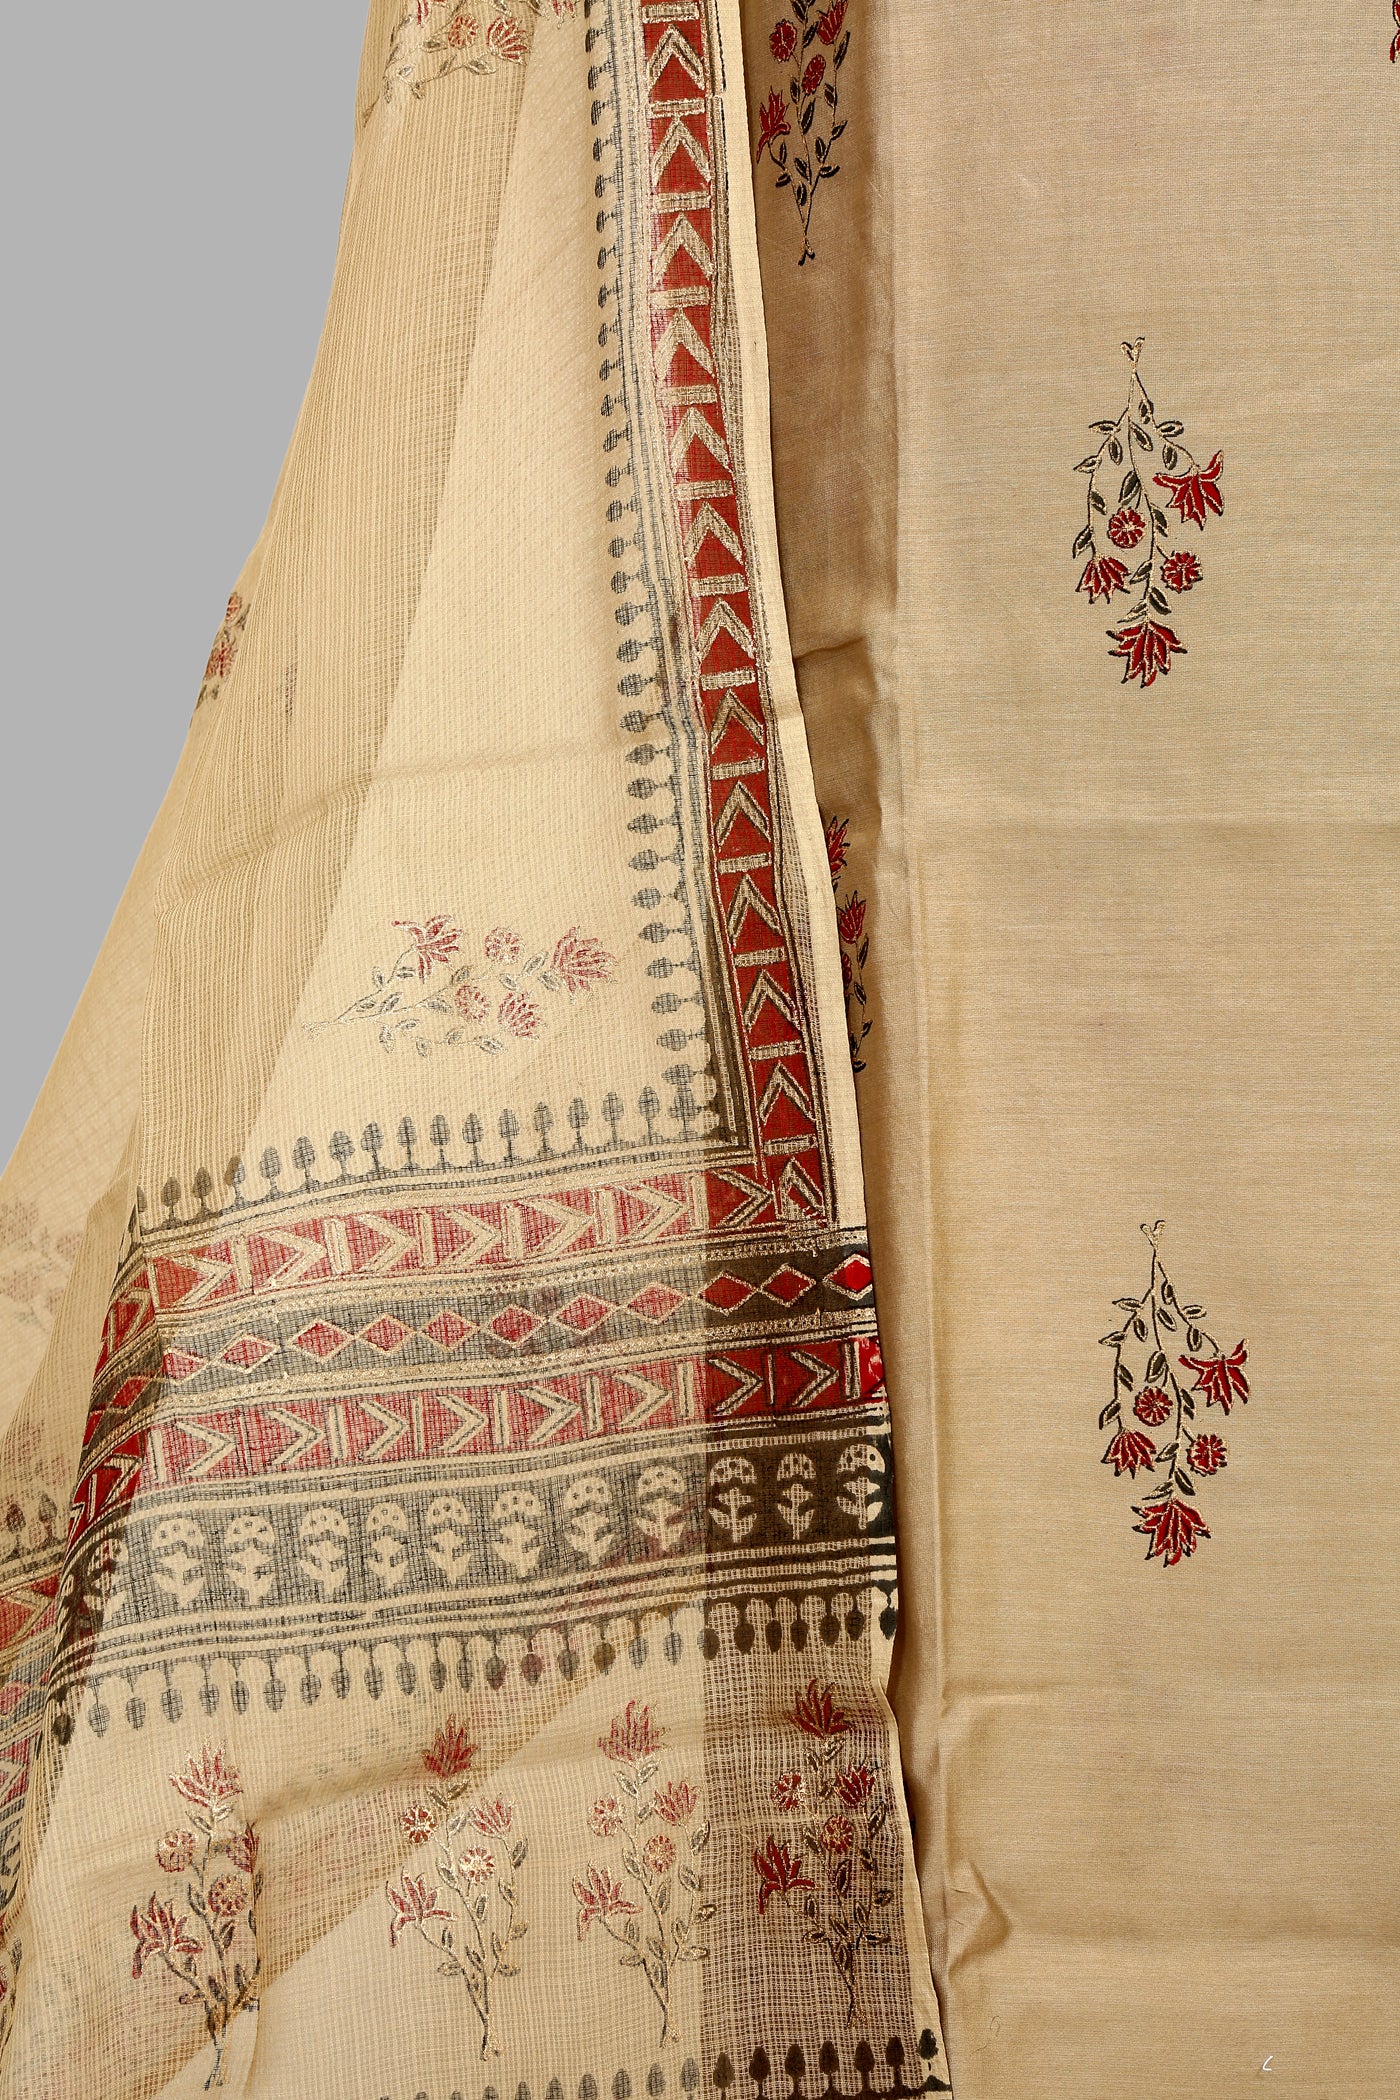 Chanderi Block printed dress material with kota dupatta